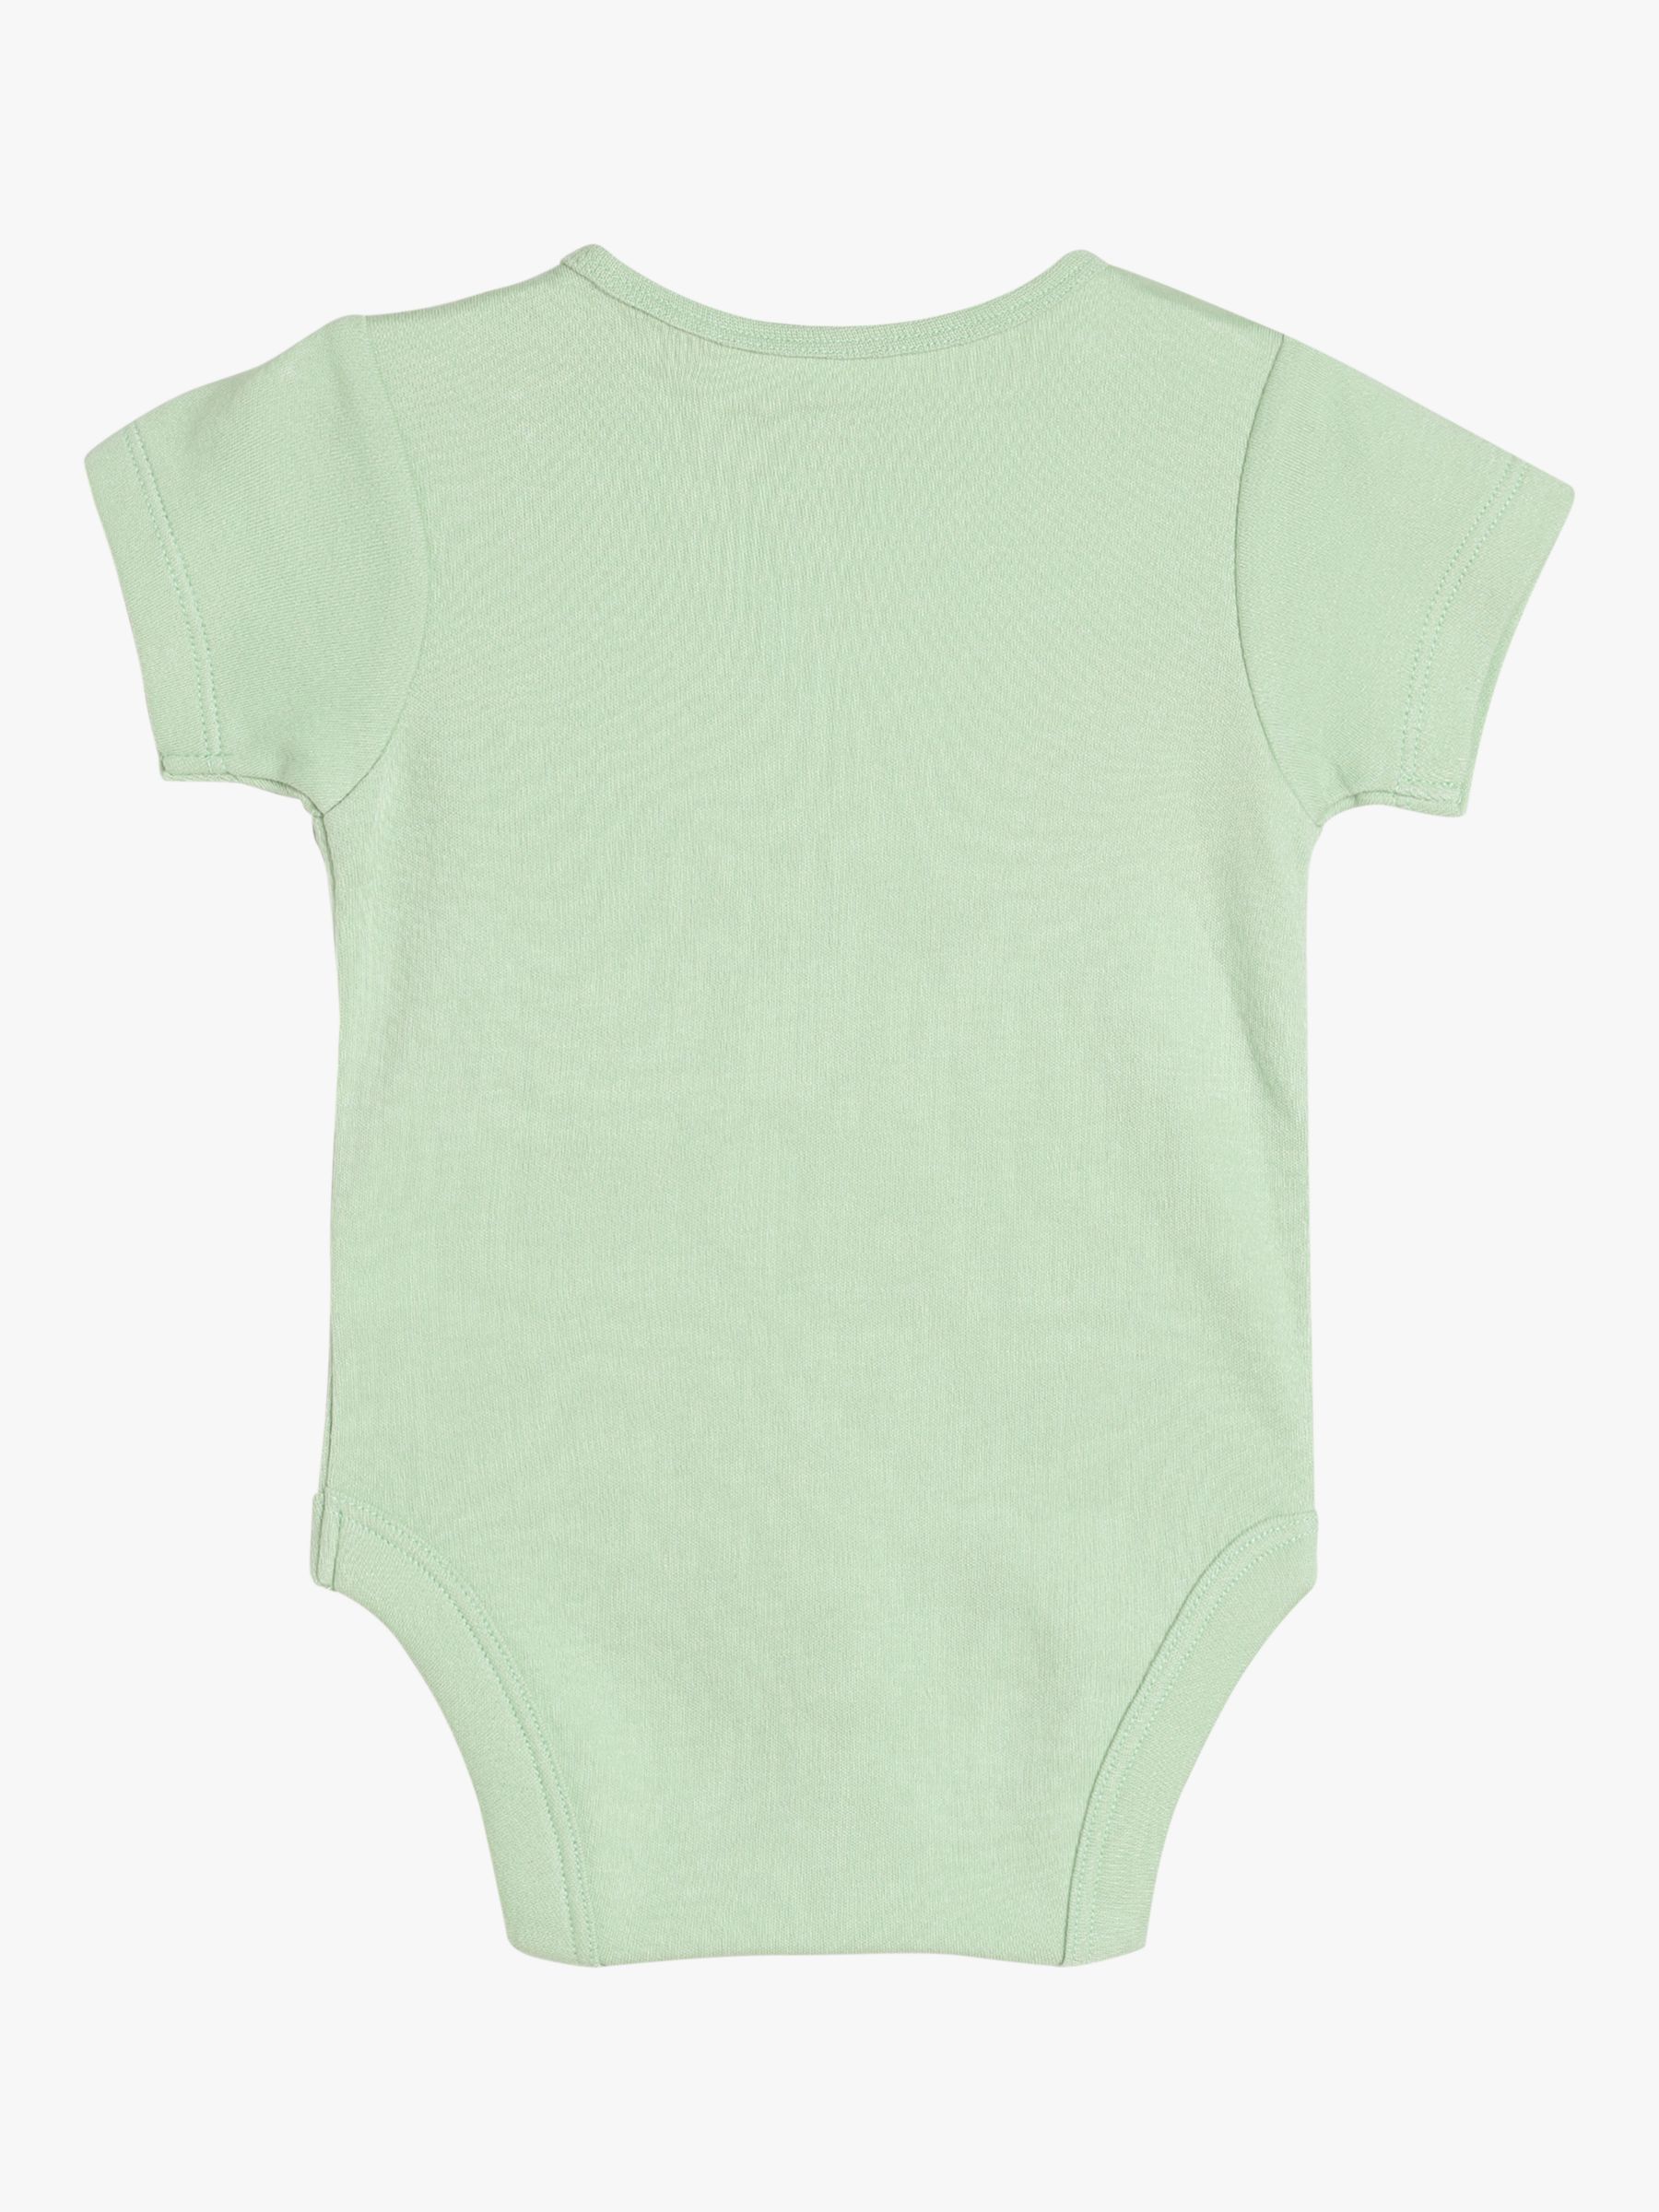 Buy Mini Cuddles Baby Aeroplane Graphic Bodysuit & Shorts Set, Green/Multi Online at johnlewis.com